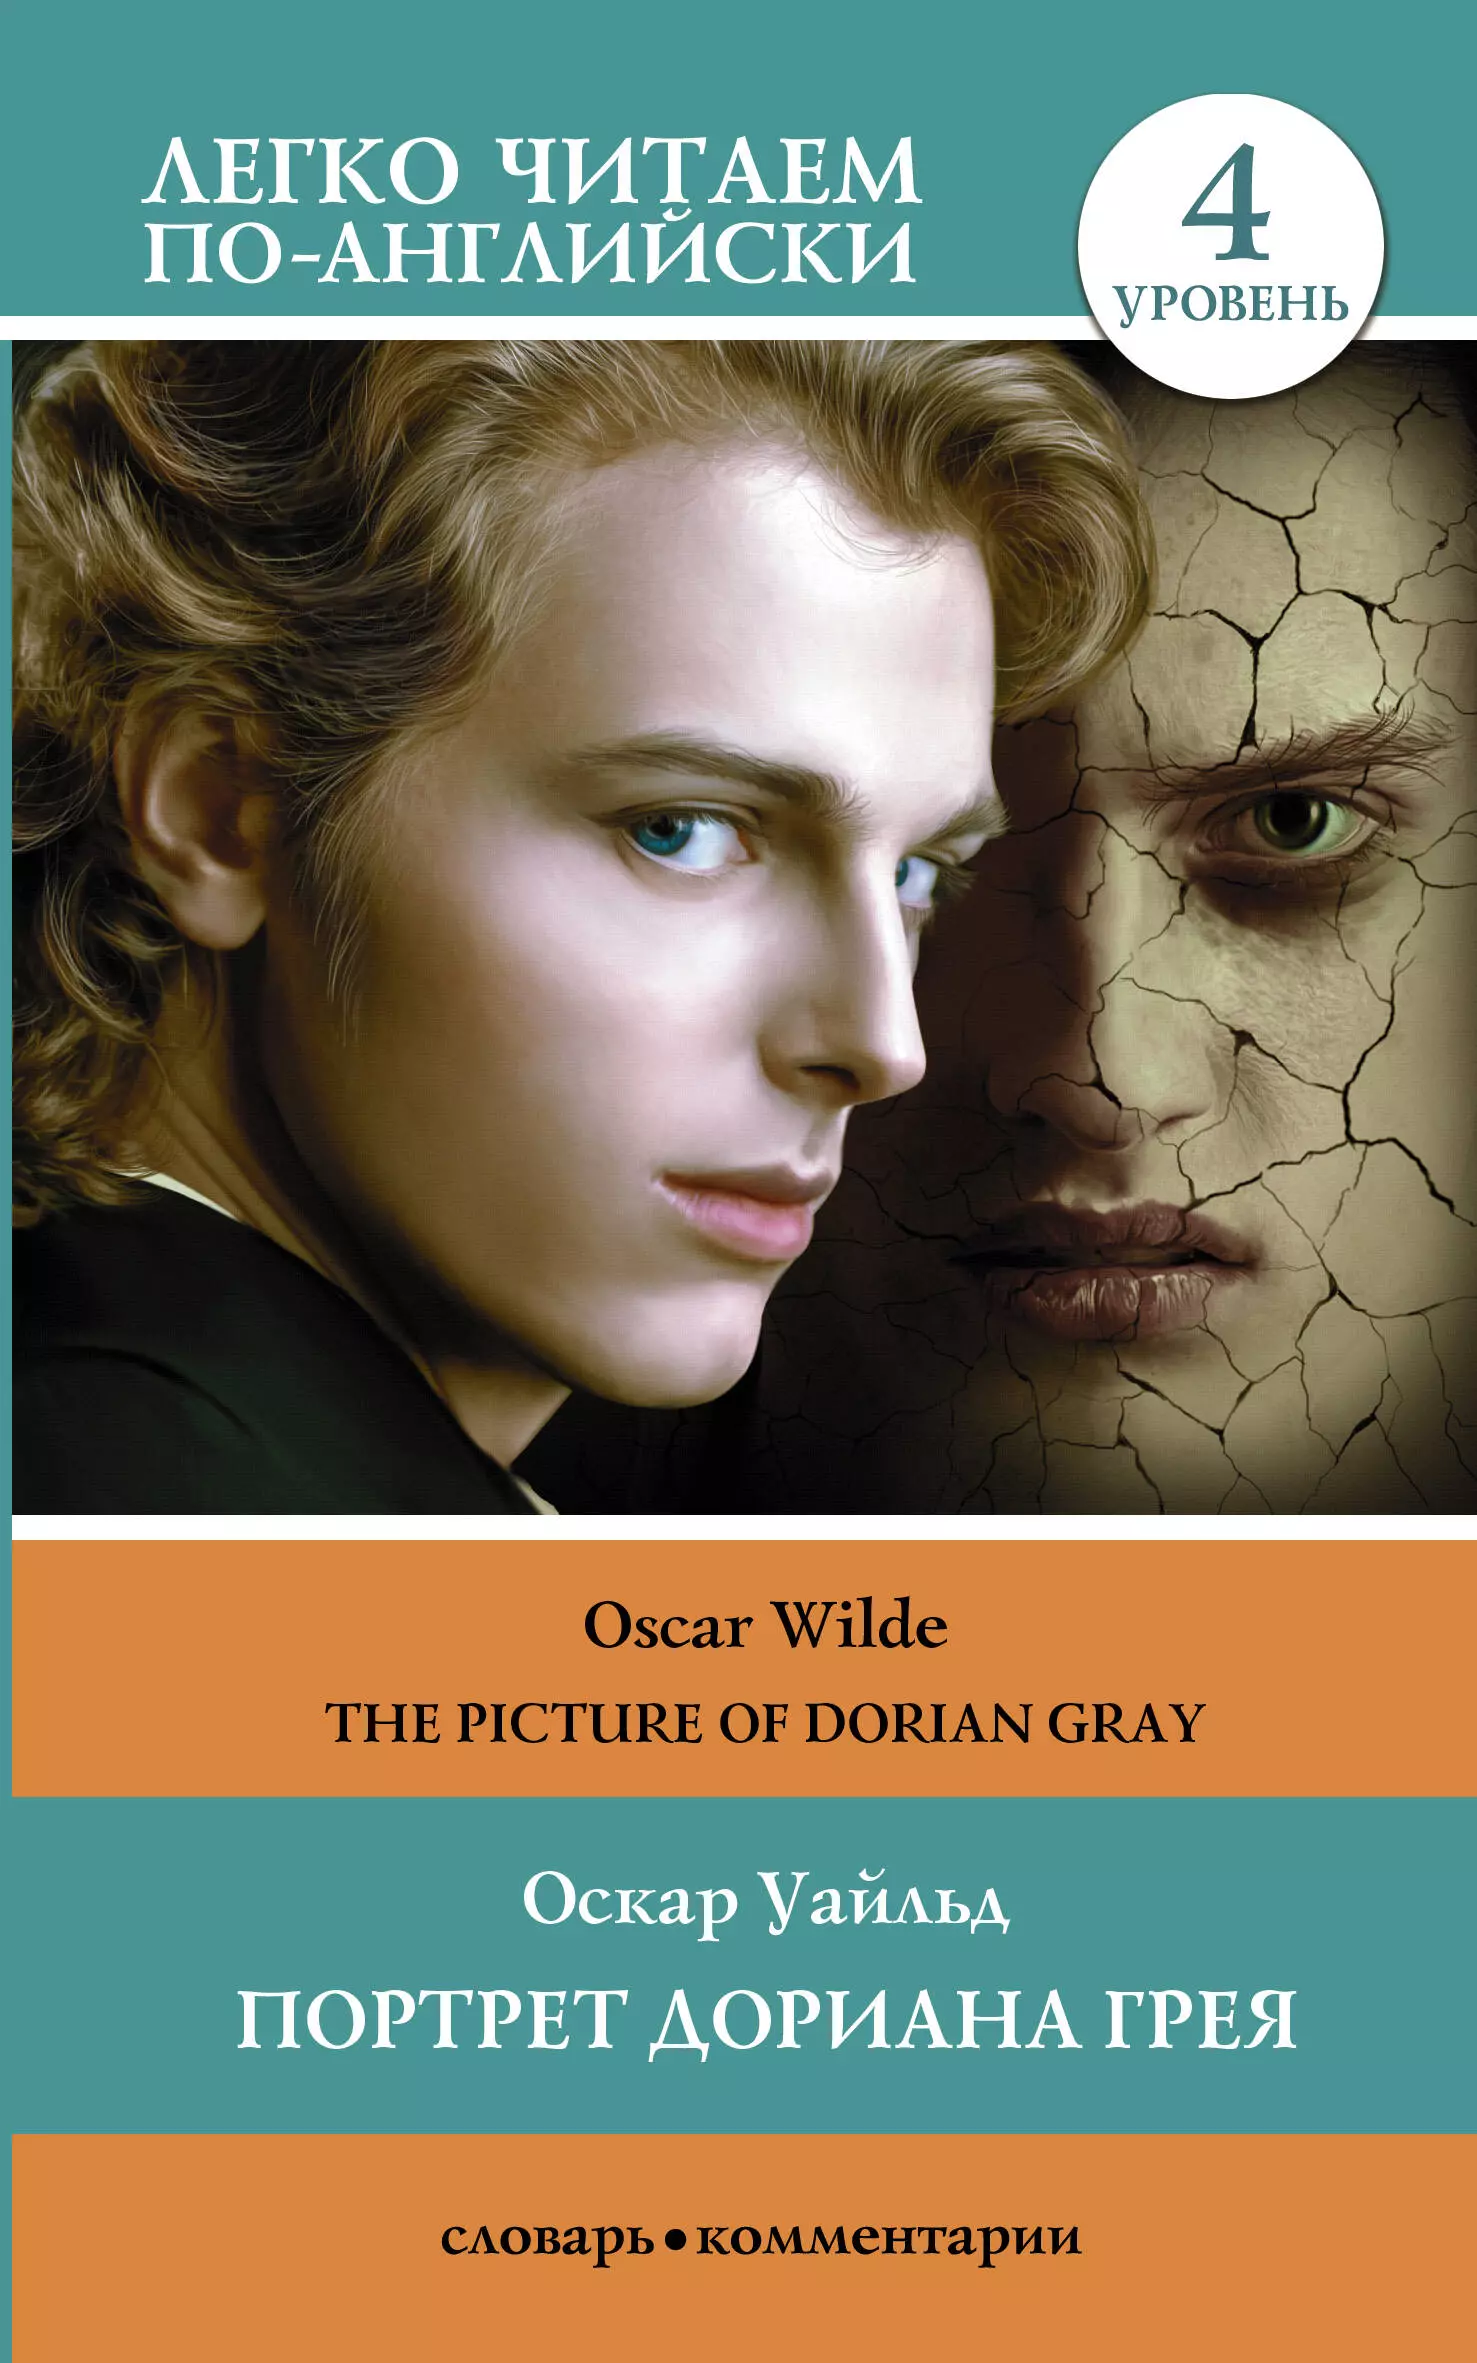 Портрет Дориана Грея. Уровень 4 = The Picture of Dorian Gray портрет писателя в молодости прашкевич г